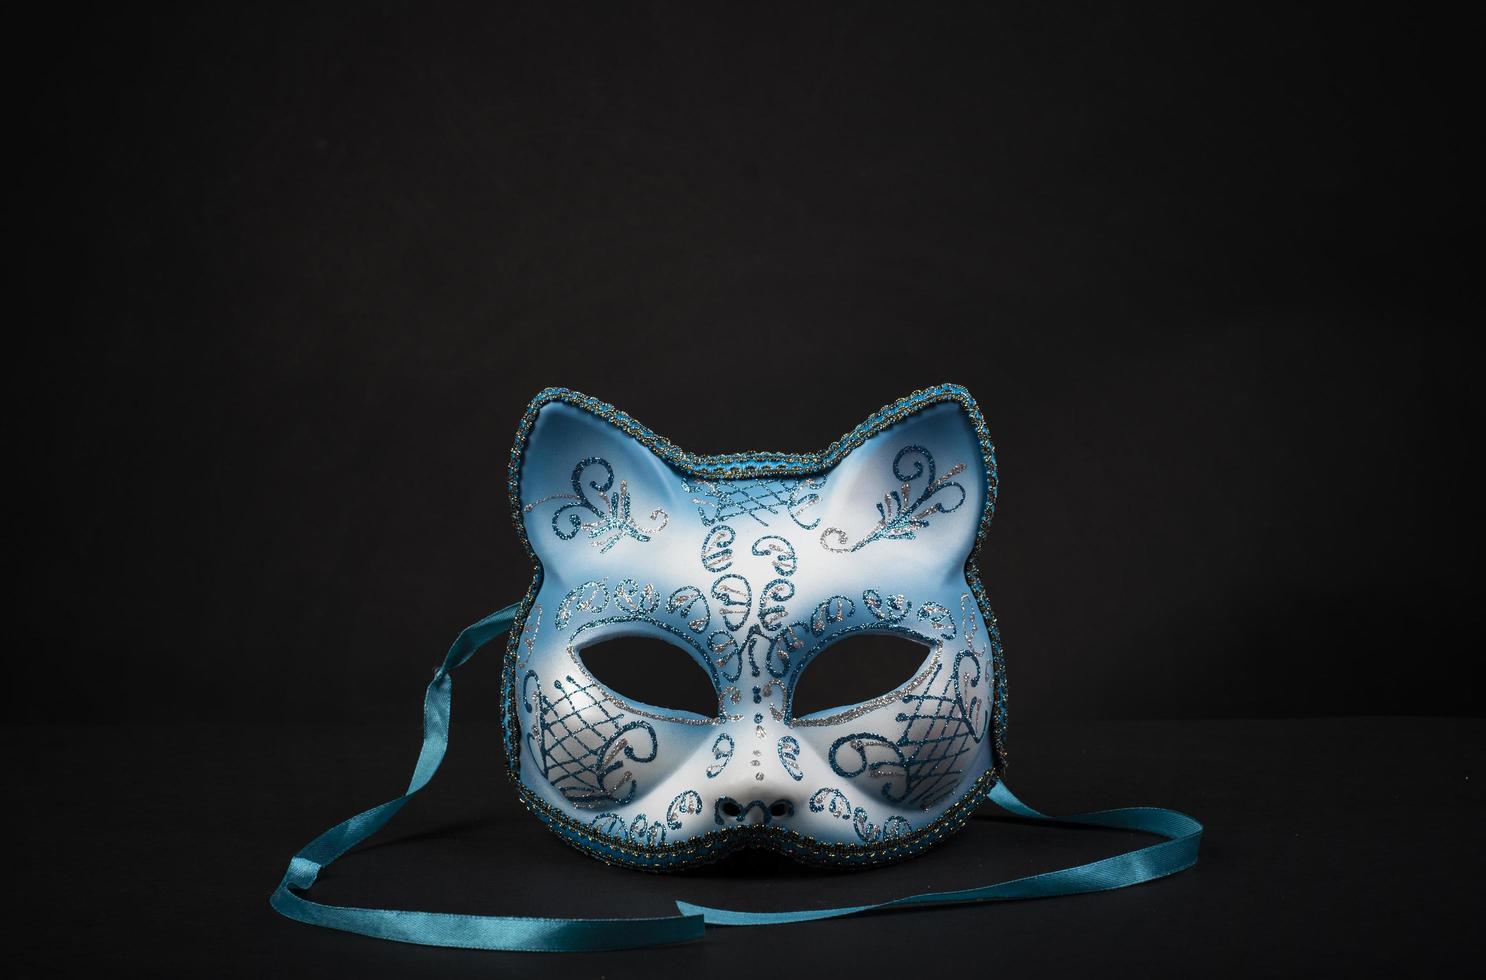 máscara de carnaval de colores en forma de gato para una celebración foto